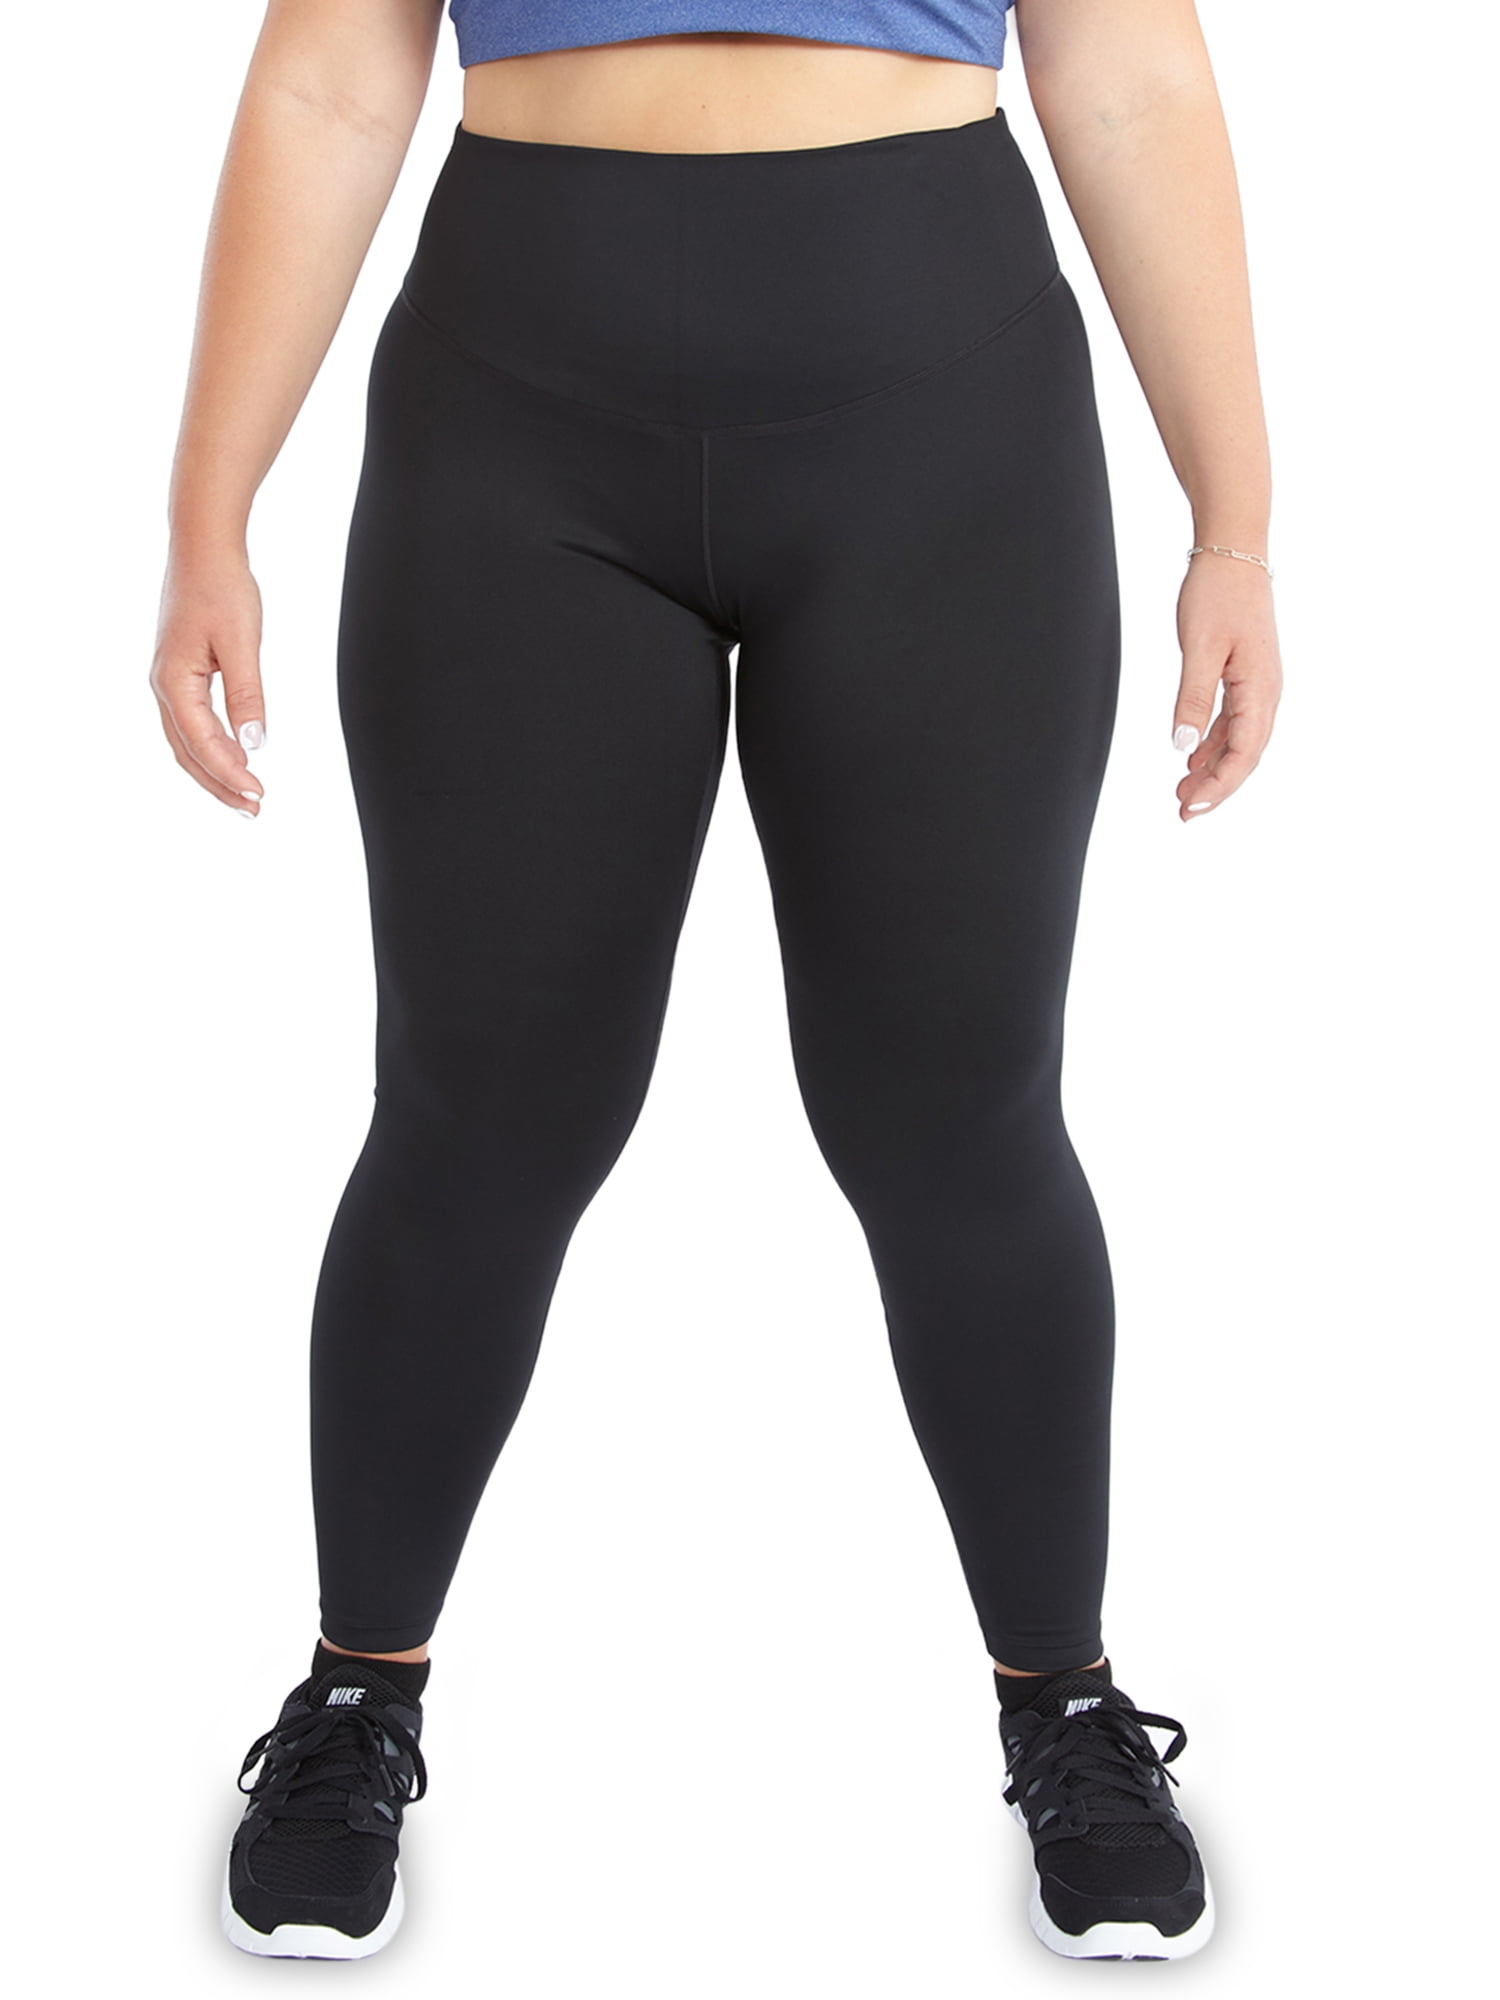 Gentleman vriendelijk onwettig geleidelijk Nike Women's Plus One Tight Leggings - Walmart.com